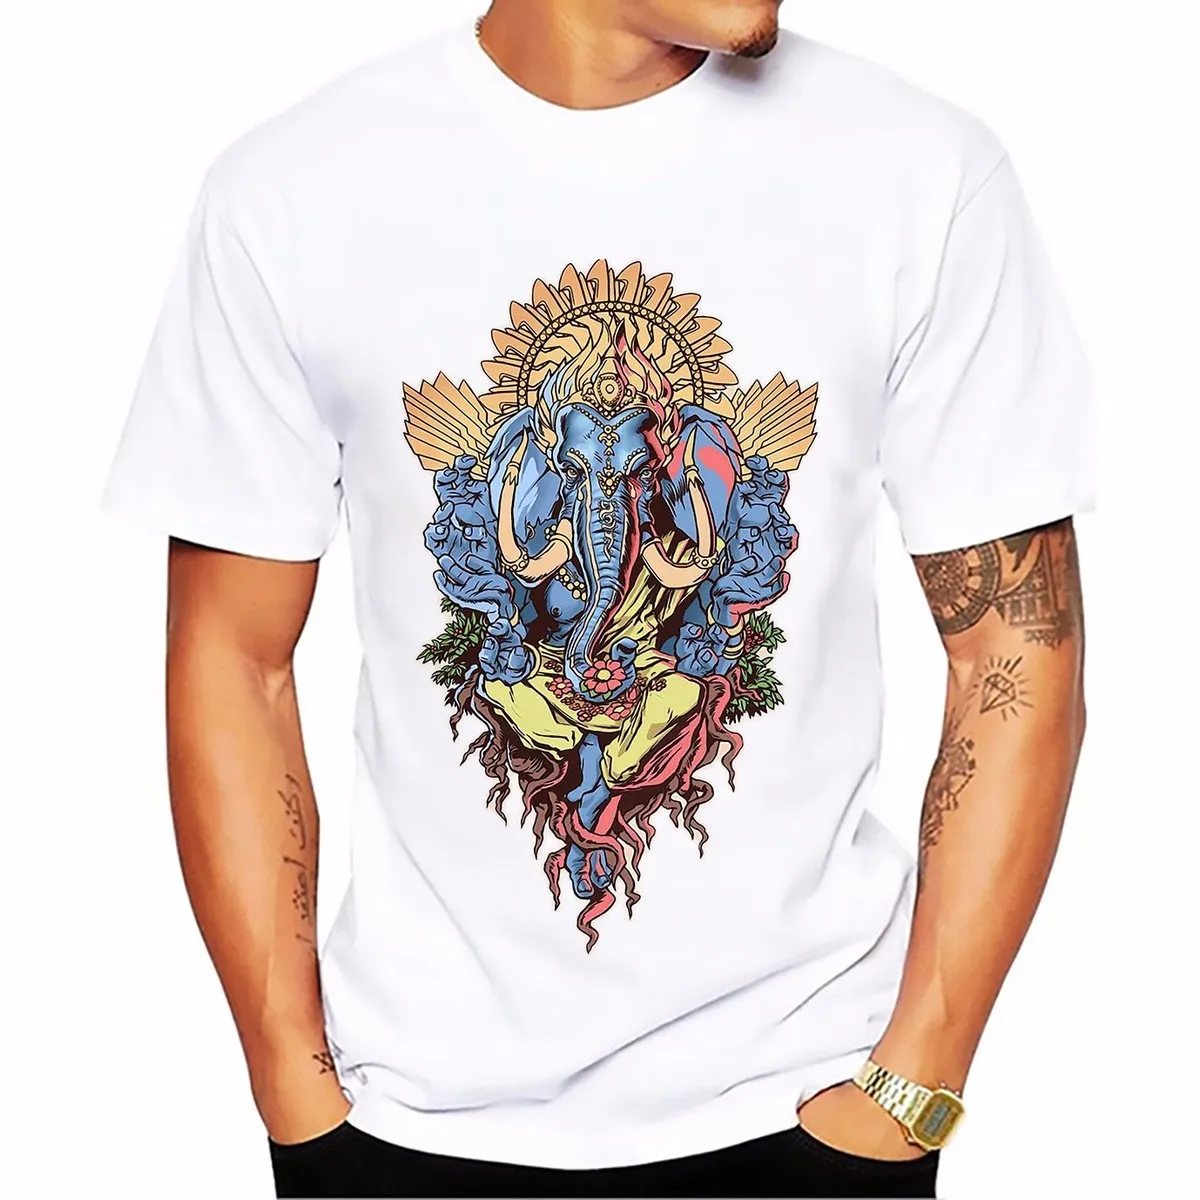 

Футболка Hinduism с изображением слона, богатства, Бога, Gan Nash, мягкая дышащая футболка с круглым вырезом, Повседневная футболка с коротким рукав...